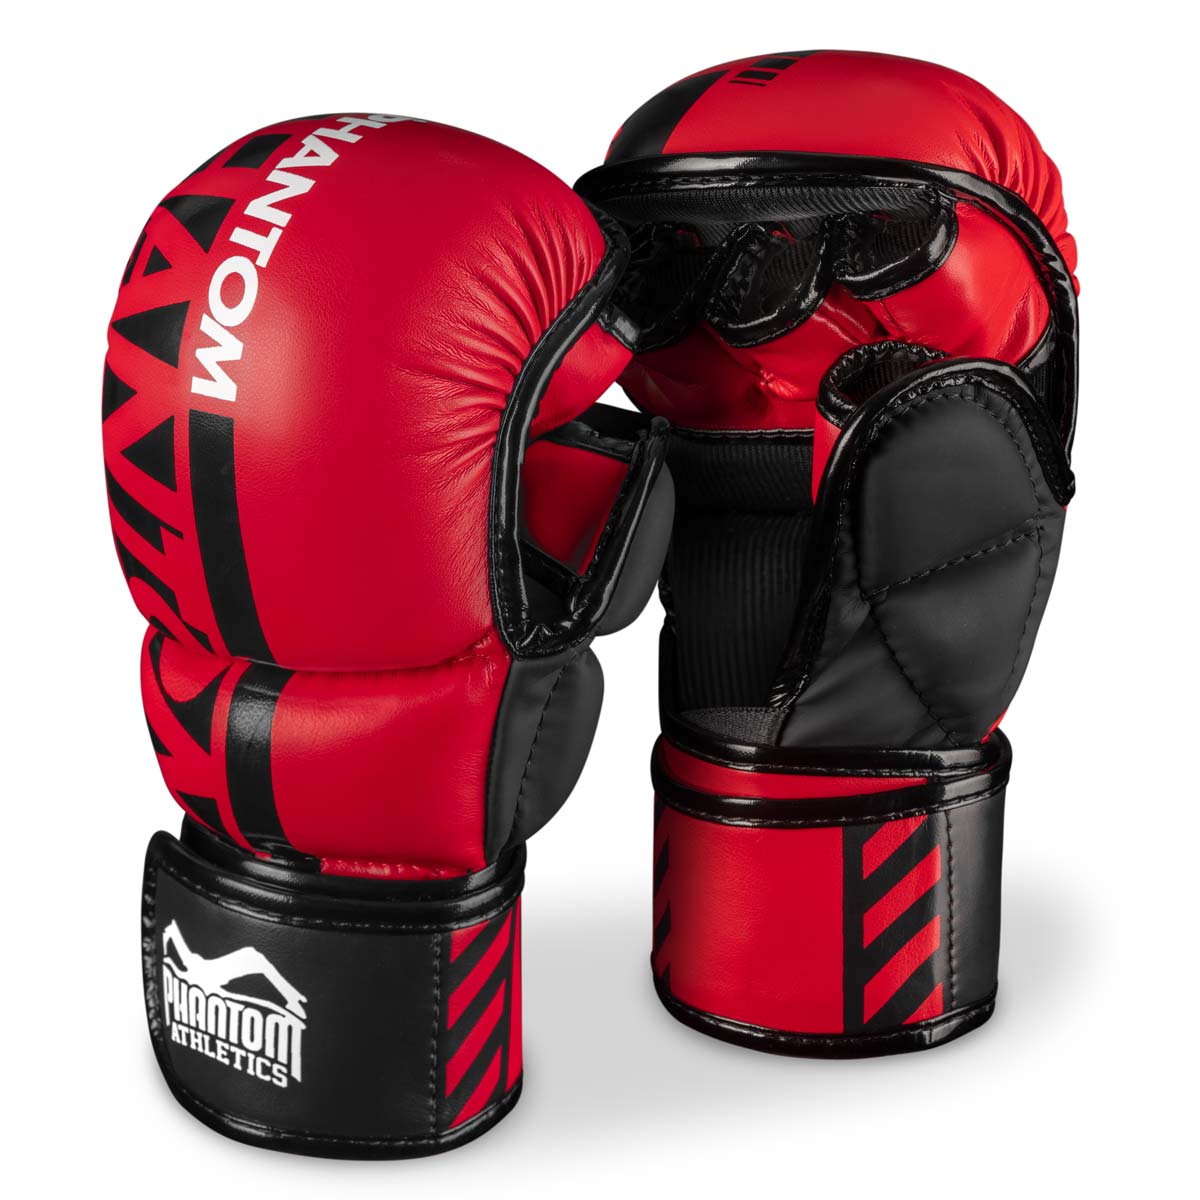 Phantom ММА спаринг рукавице. Најсигурнија рукавица за ваш тренинг борилачких вештина. Сада у ограниченој црвеној боји.